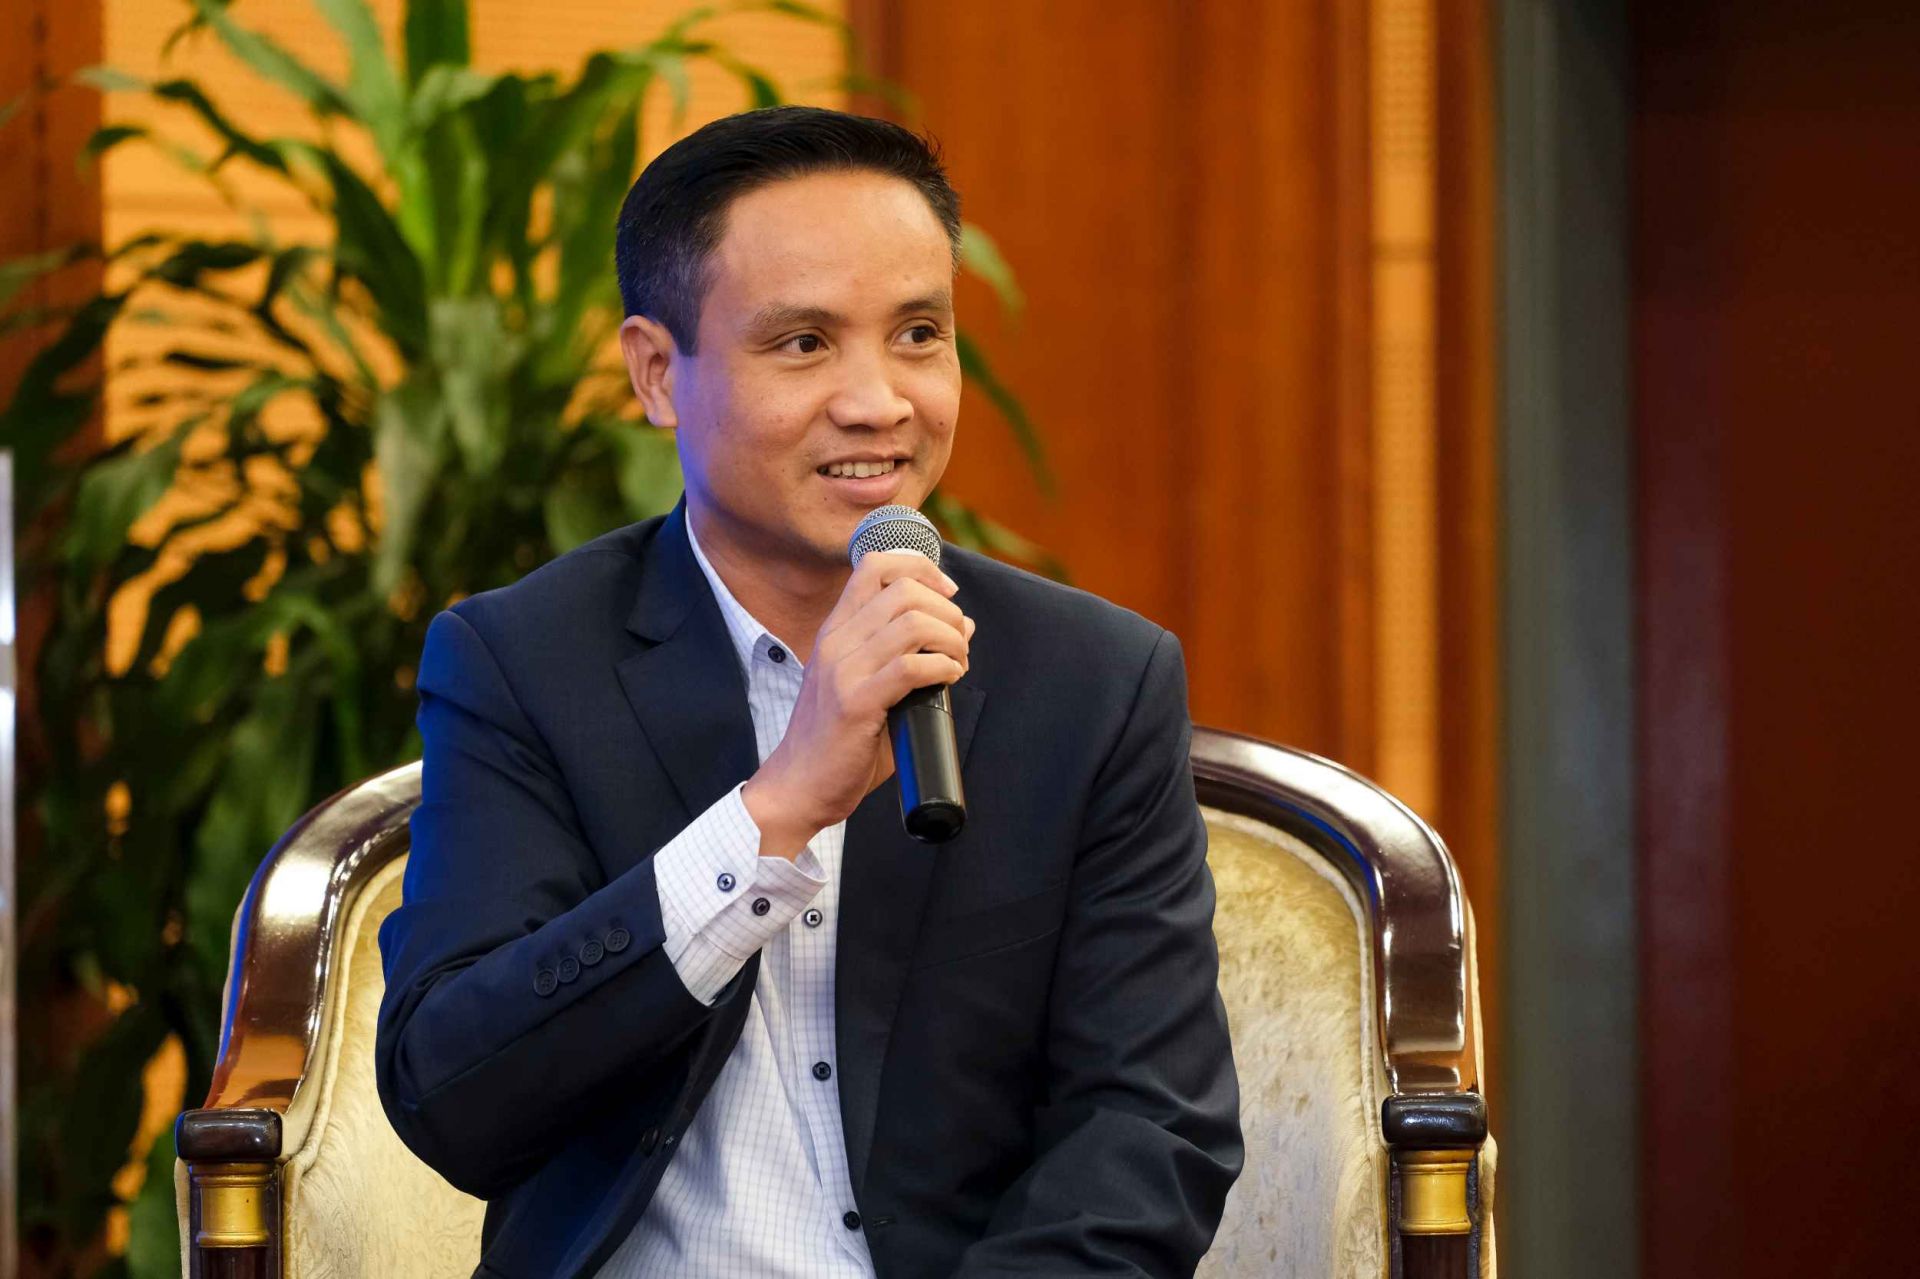 Ông Lê Mạnh Phong - Giám đốc điều hành khối cửa hàng Big C/GO khu vực Hà Nội và miền Bắc, Tập đoàn Central Retail Việt Nam